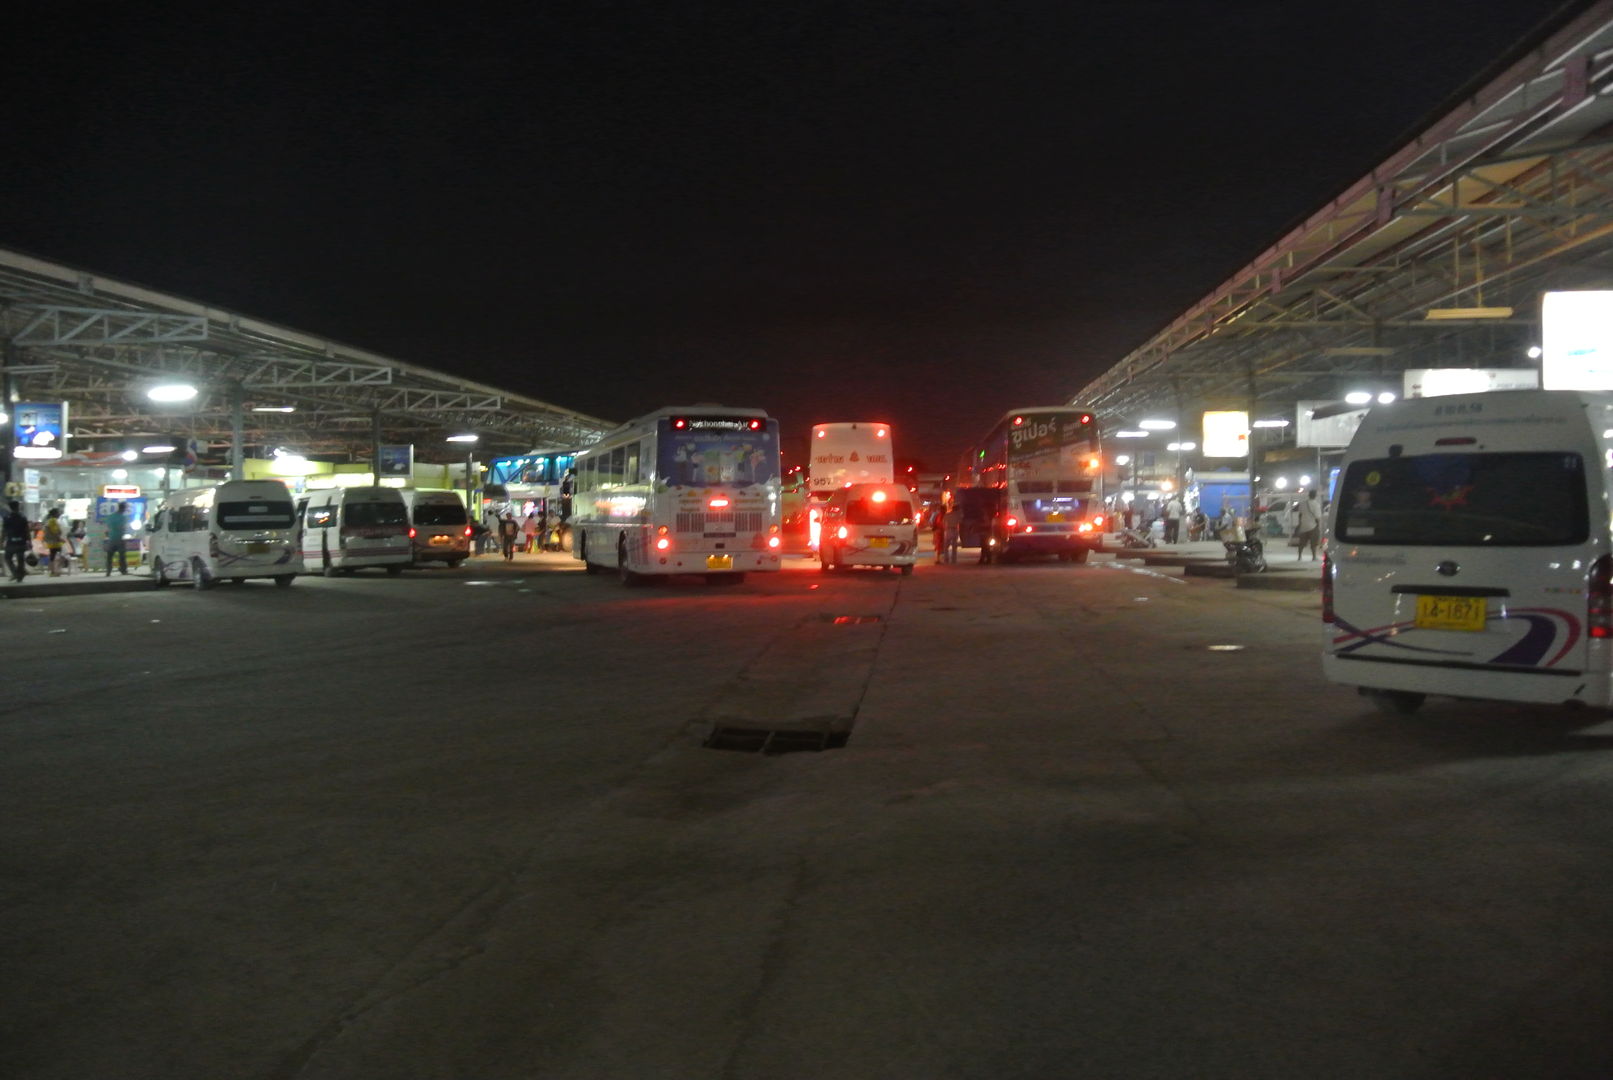 bus-bangkok